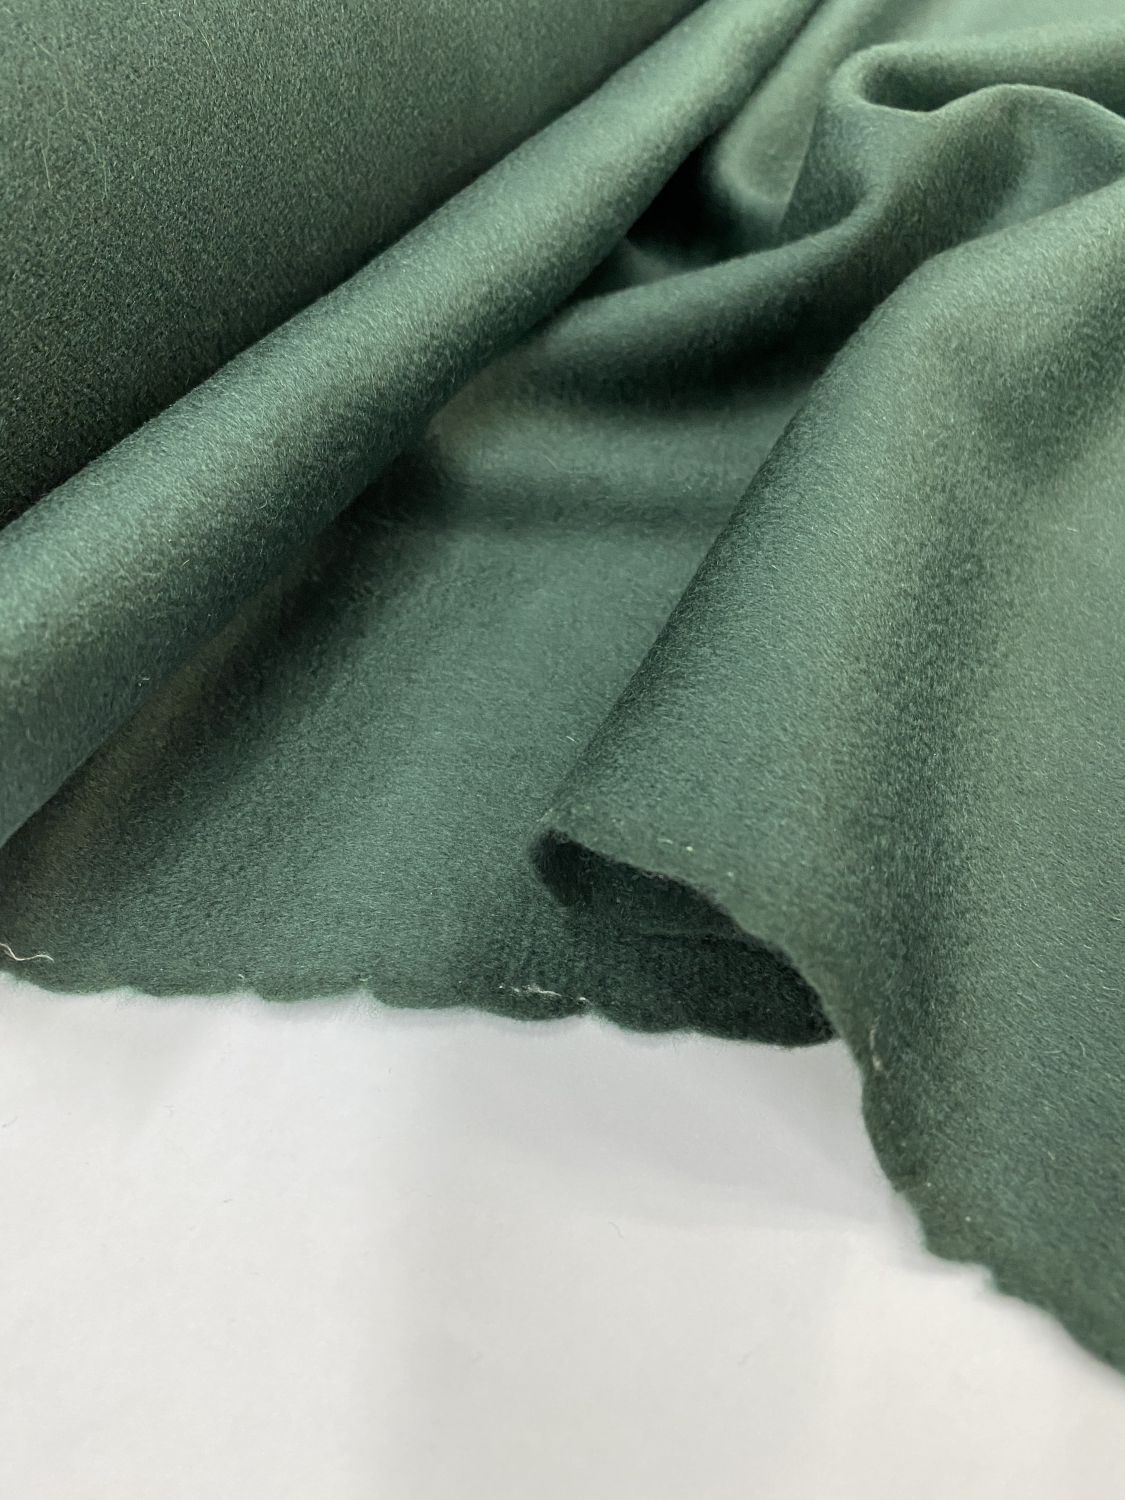 Ткань пальтовая тёмно зелёного цвета шириной1,55м